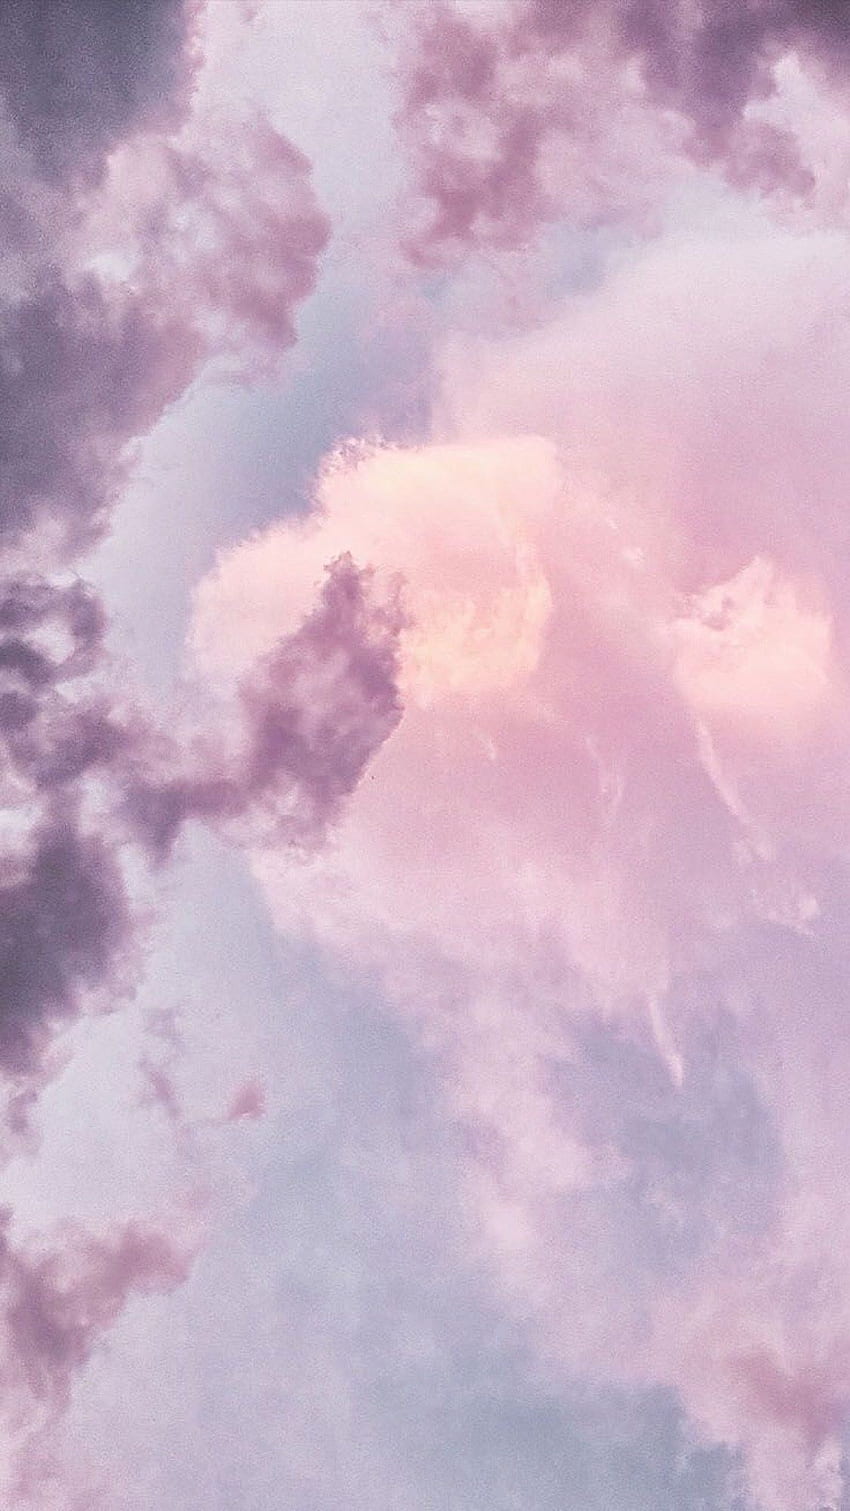 Cielo, Nube, Rosa, Día, Púrpura, Violeta en 2020. Pastel iphone , Aesthetic iphone , Preppy, Pastel Purple Clouds fondo de pantalla del teléfono